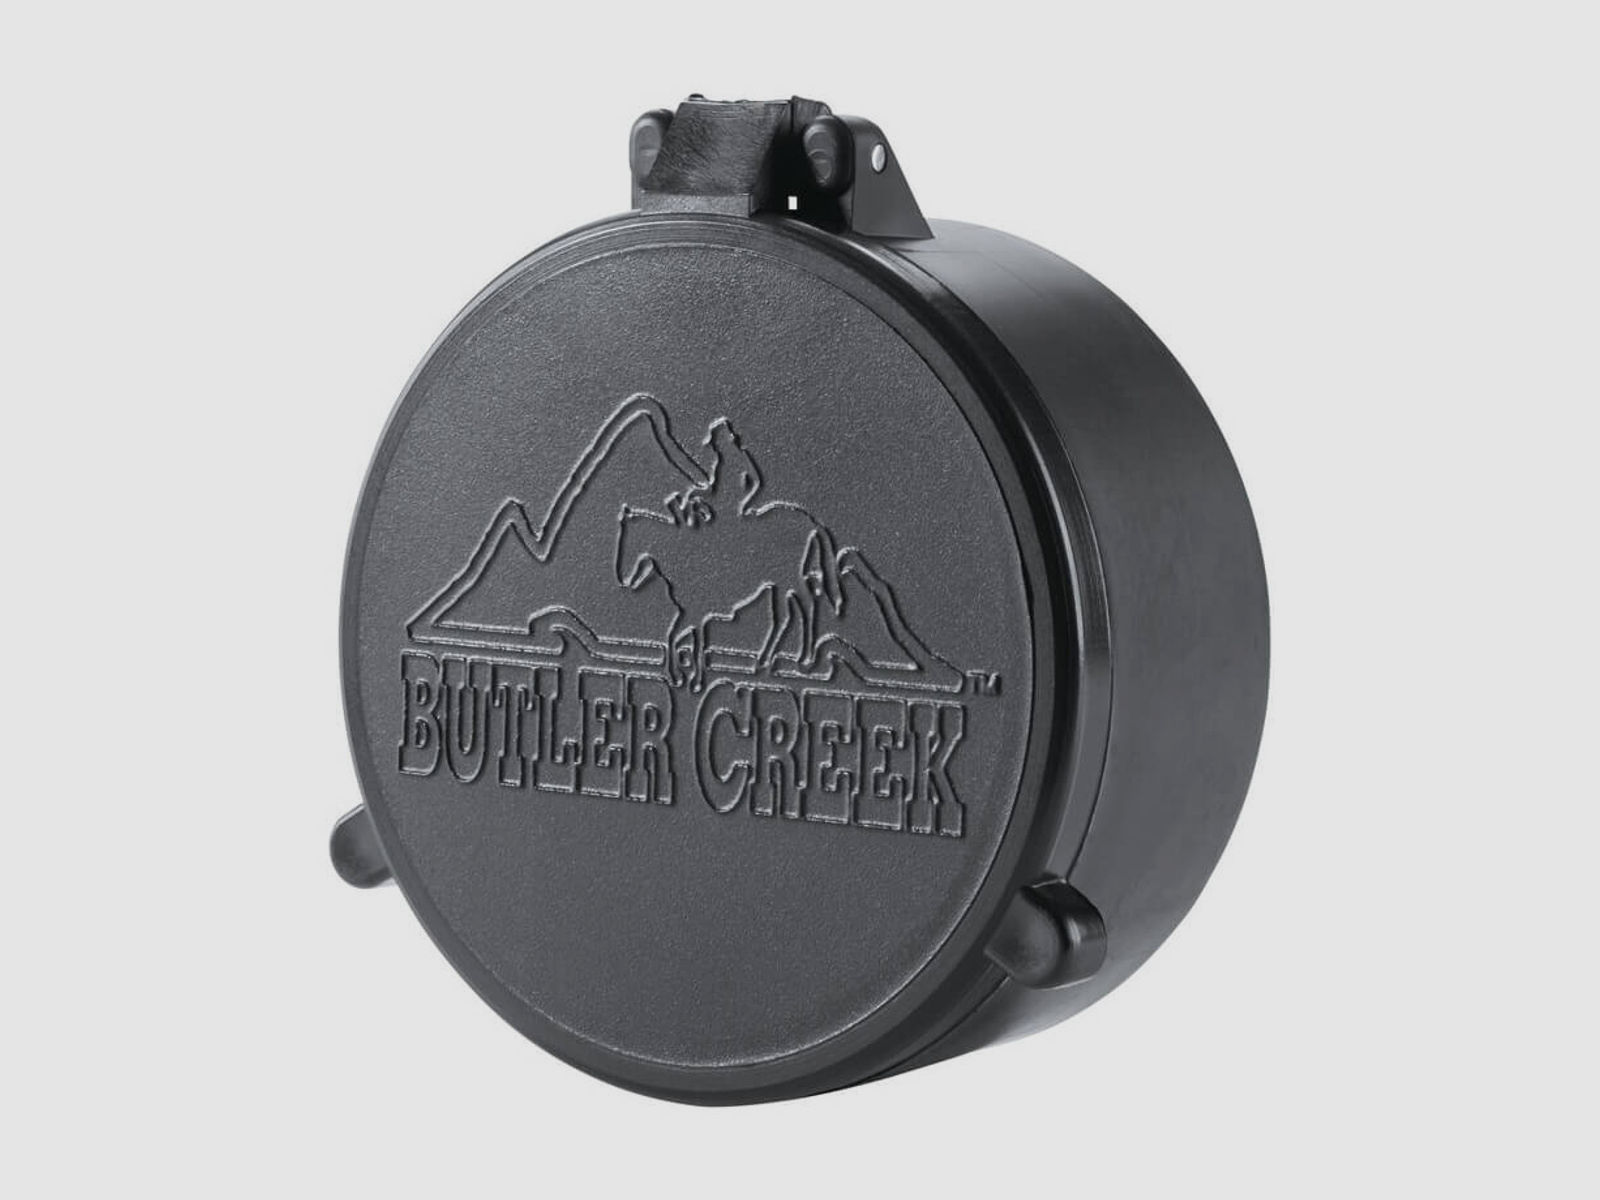 Butler Creek Objektiv Schutzkappe - 46,2mm